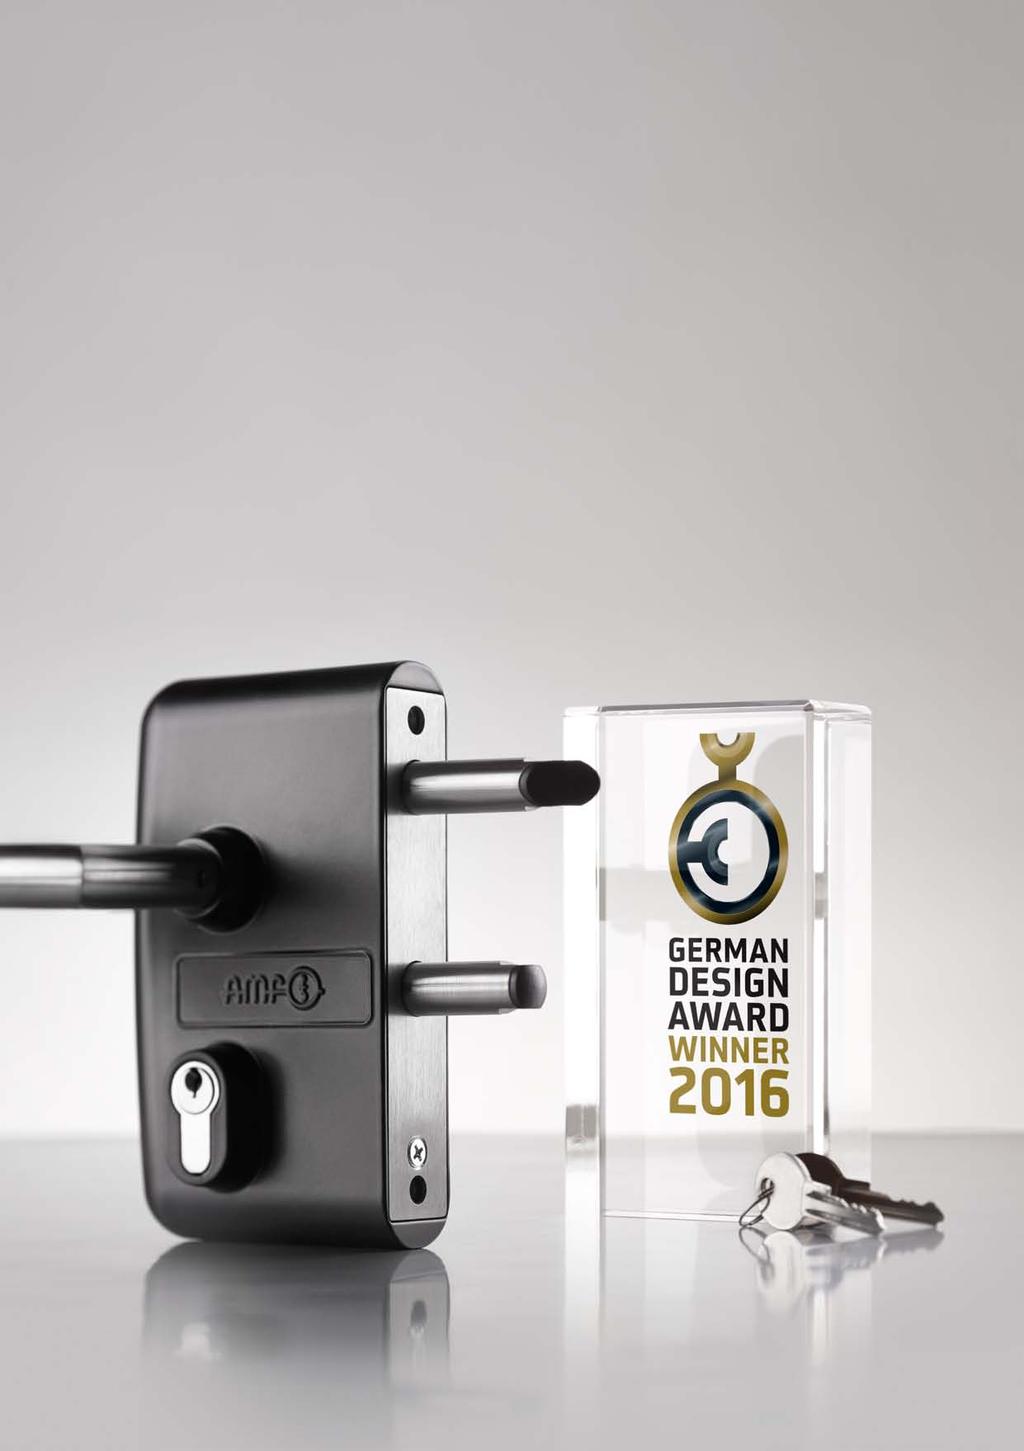 German Design award 2016 - Winner ist Unser Gittertorschloss VARIBO Die gestalterische Qualität und das elegante, funktionale